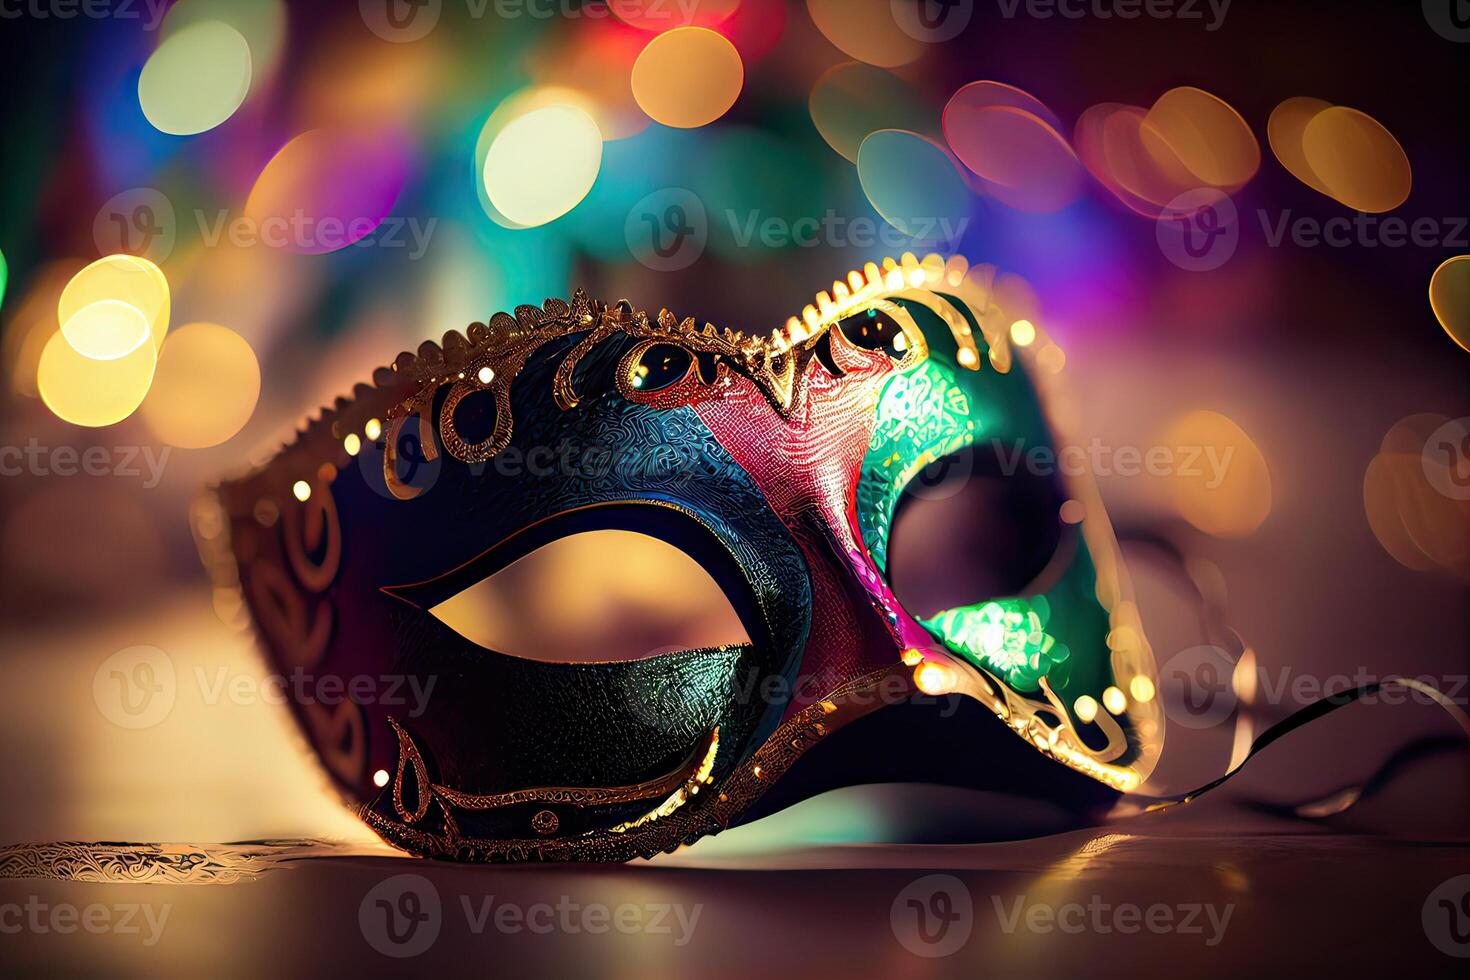 generatief ai illustratie van de levendig energie en opwinding van braziliaans carnaval, Venetiaanse carnaval masker en confetti met abstract onscherp bokeh lichten en glimmend slingers foto